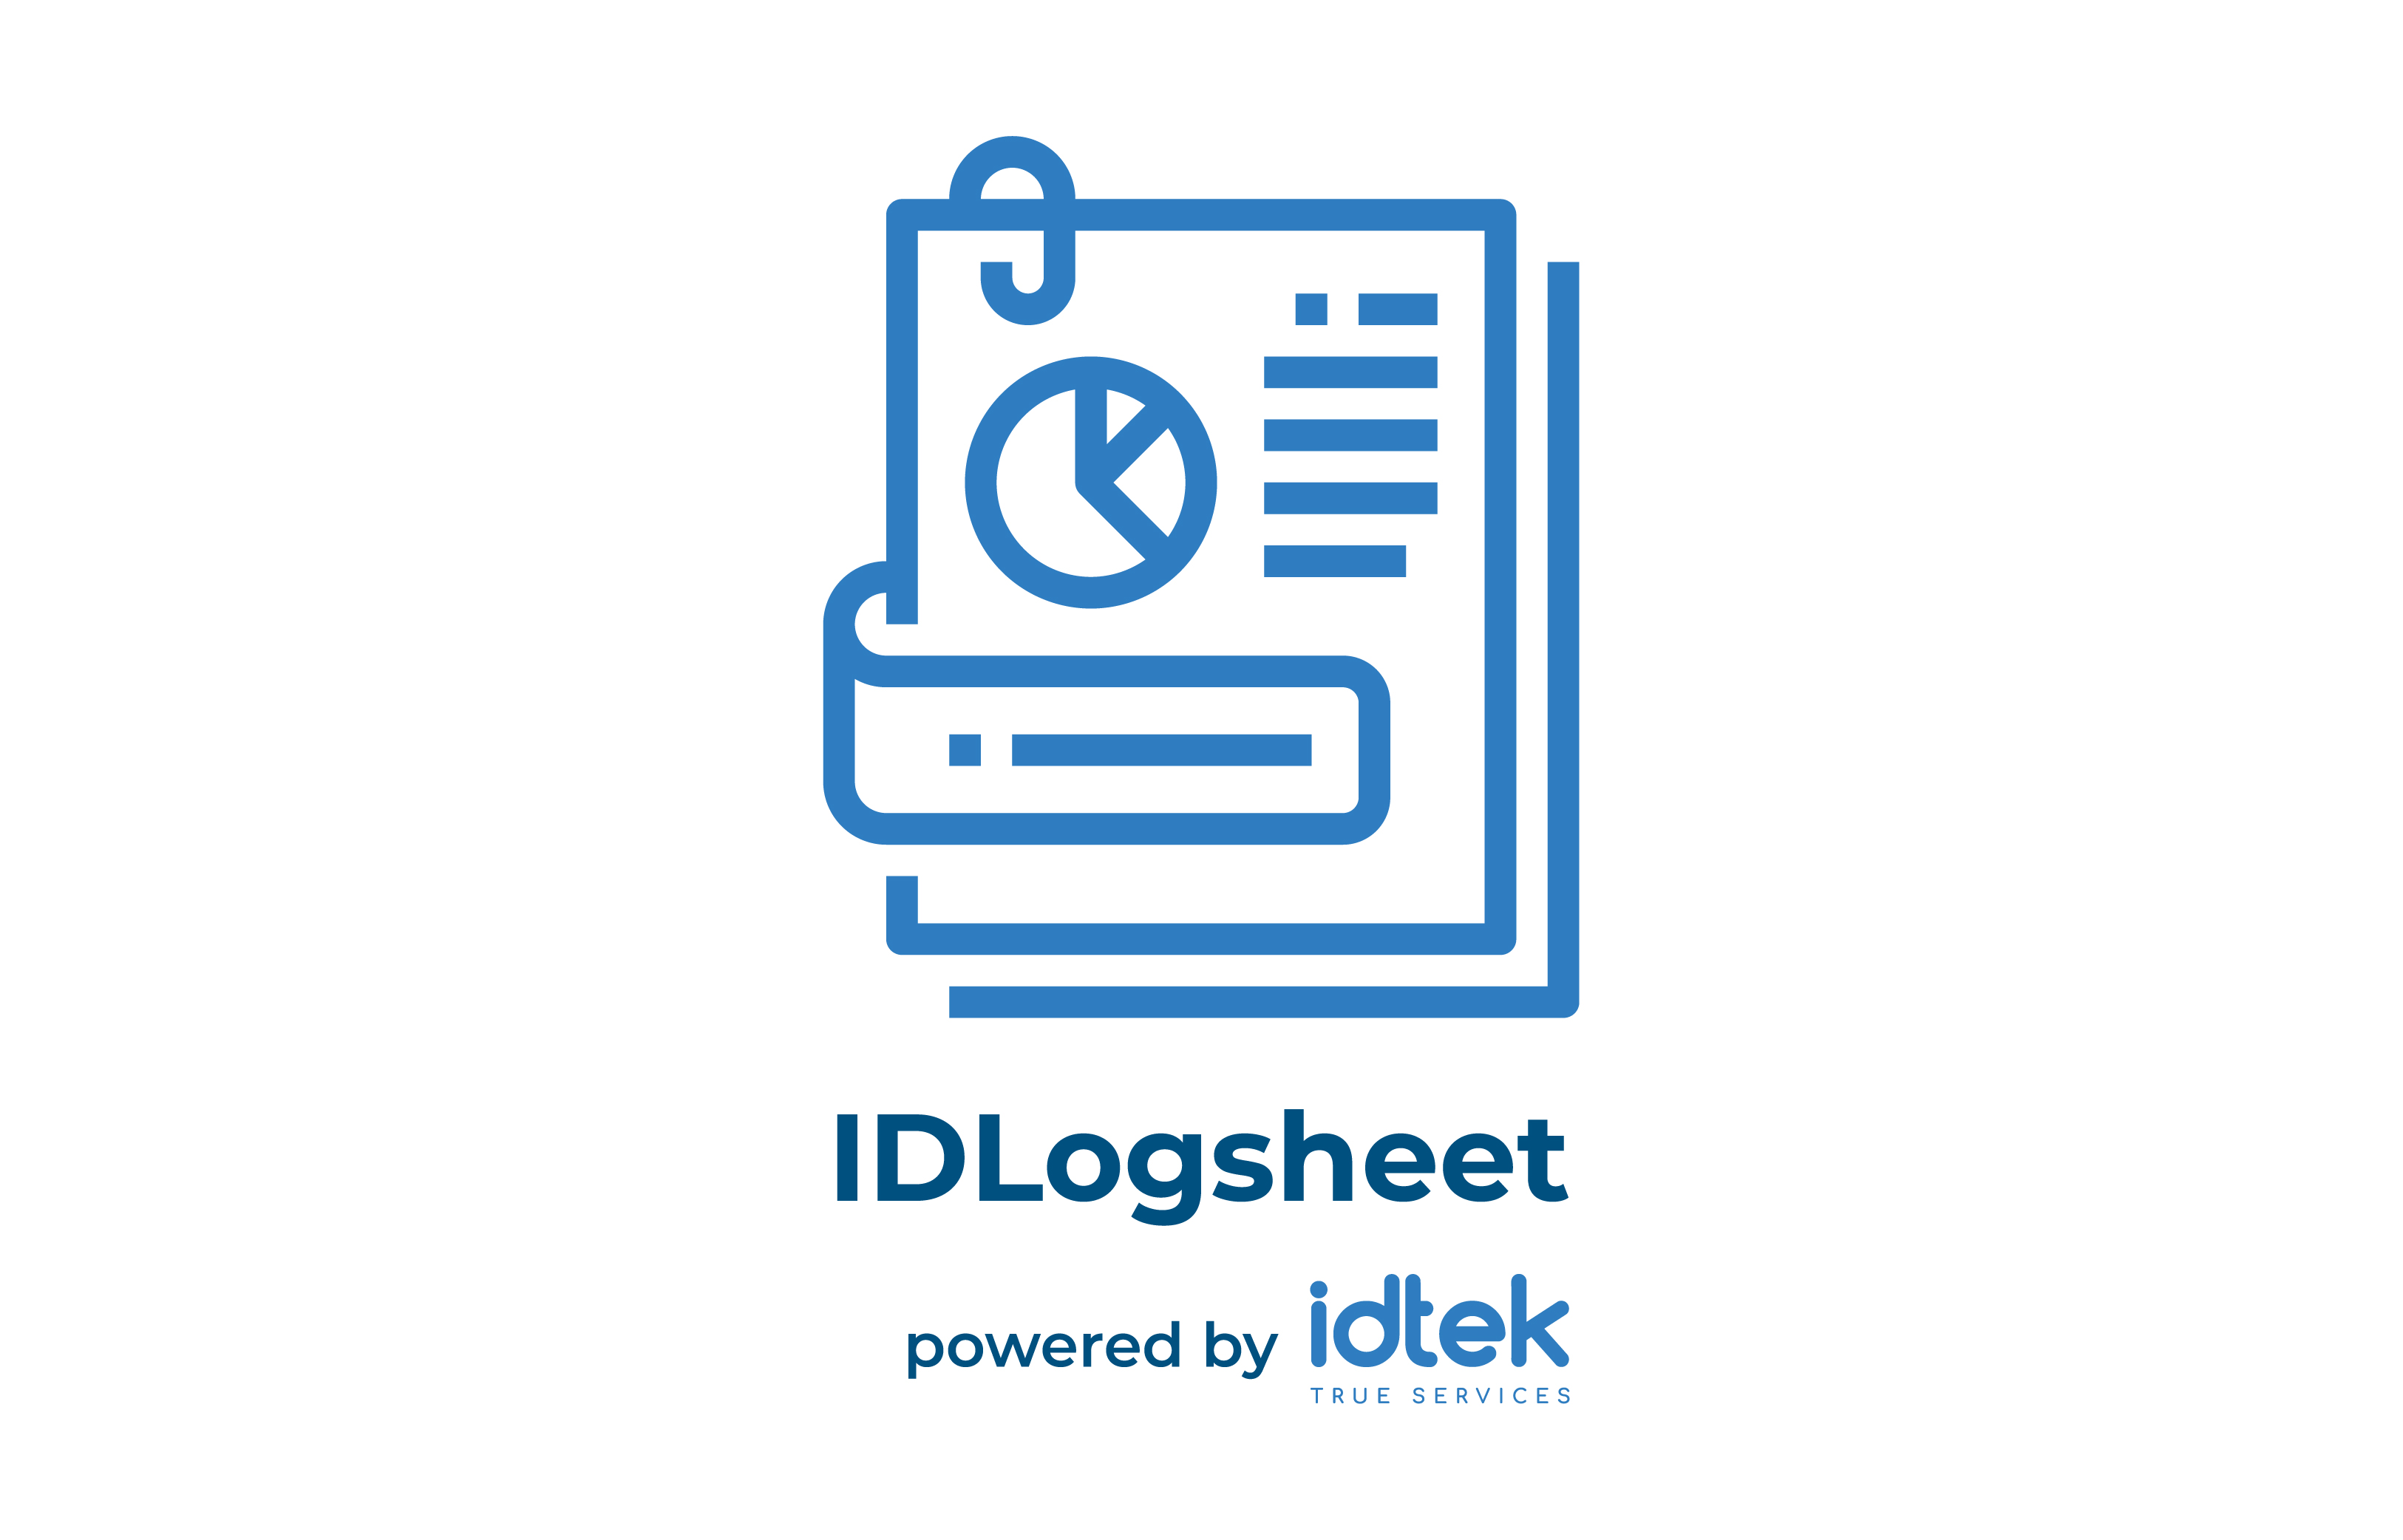 Phần mềm theo dõi thông số vận hành IDLogsheet